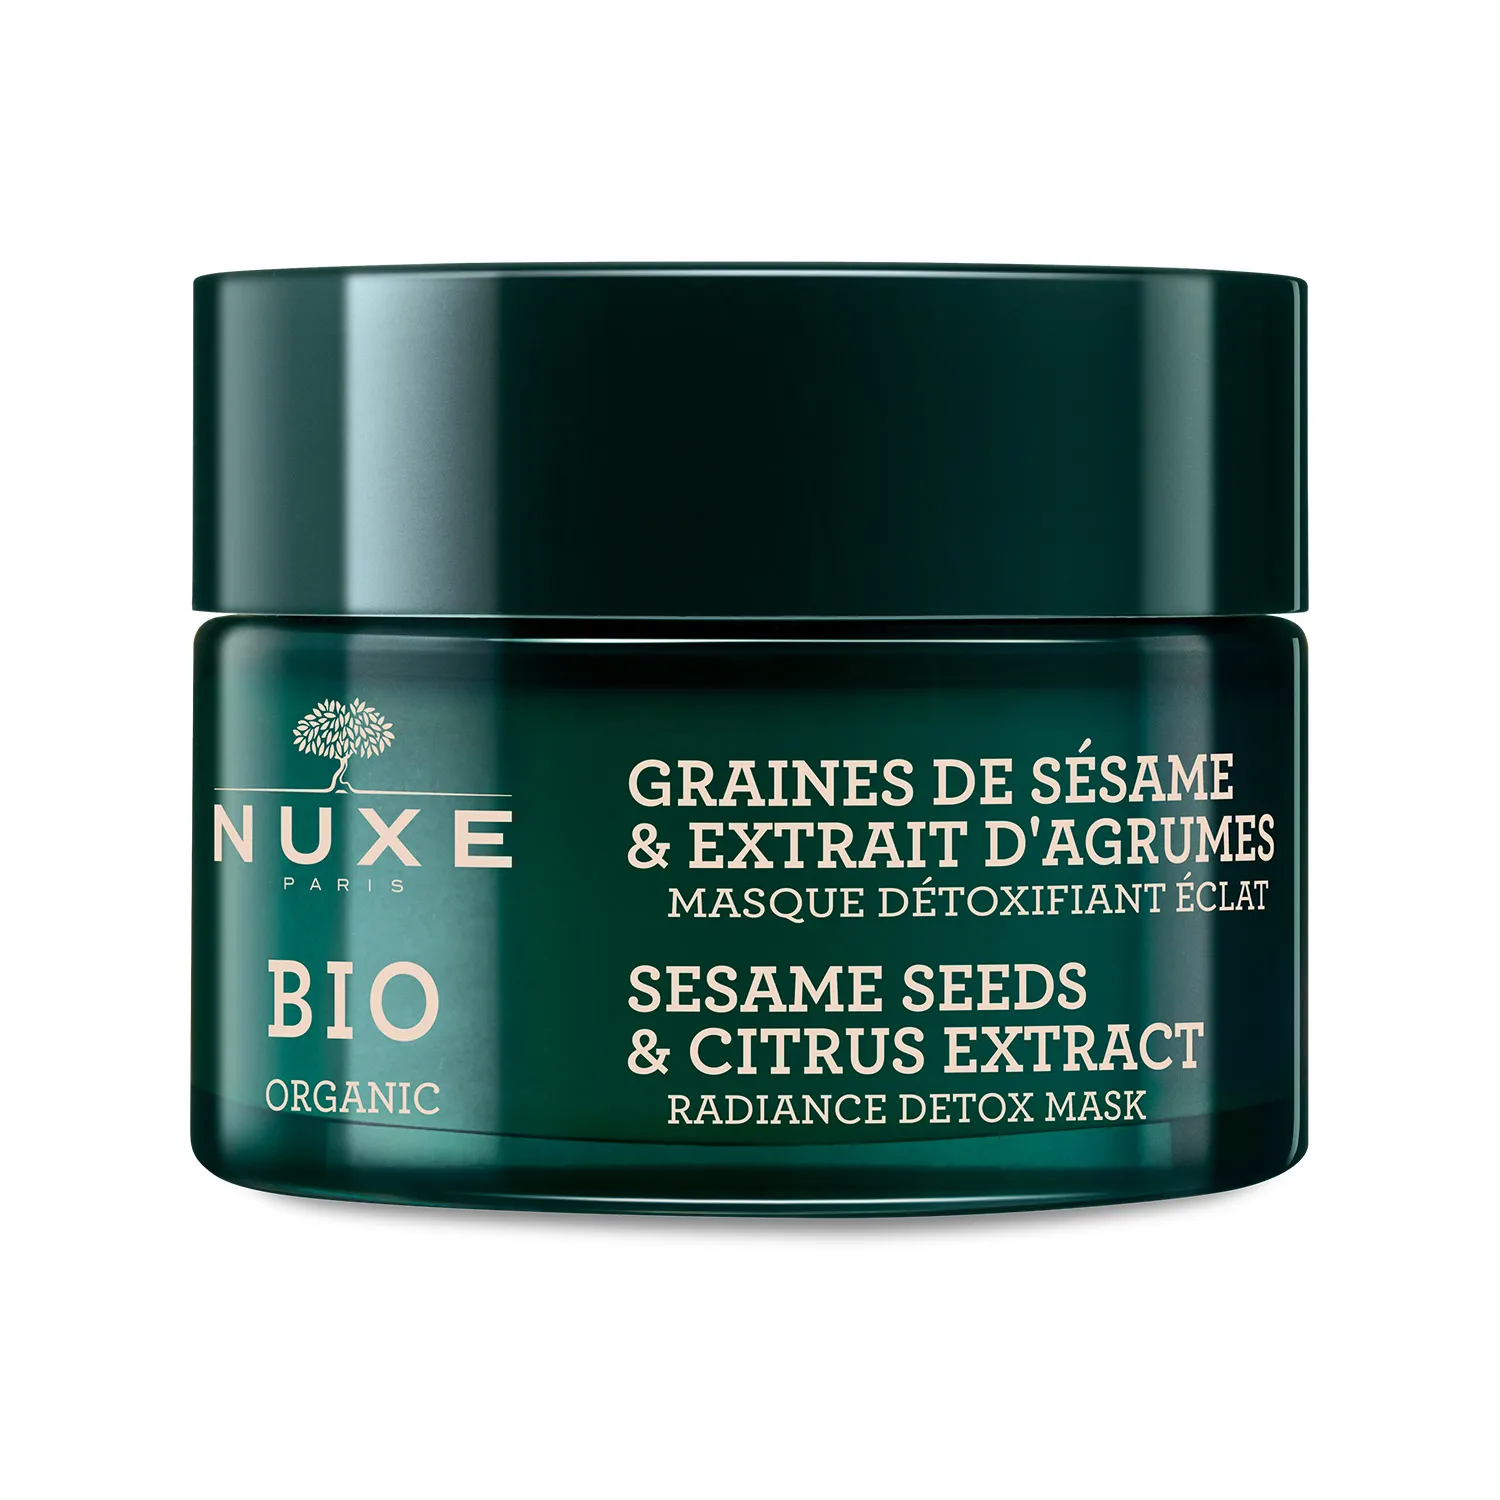 Nuxe Bio, rozświetlająca maska detoksykująca - ekstrakt z cytrusów i ziaren sezamu, 50ml